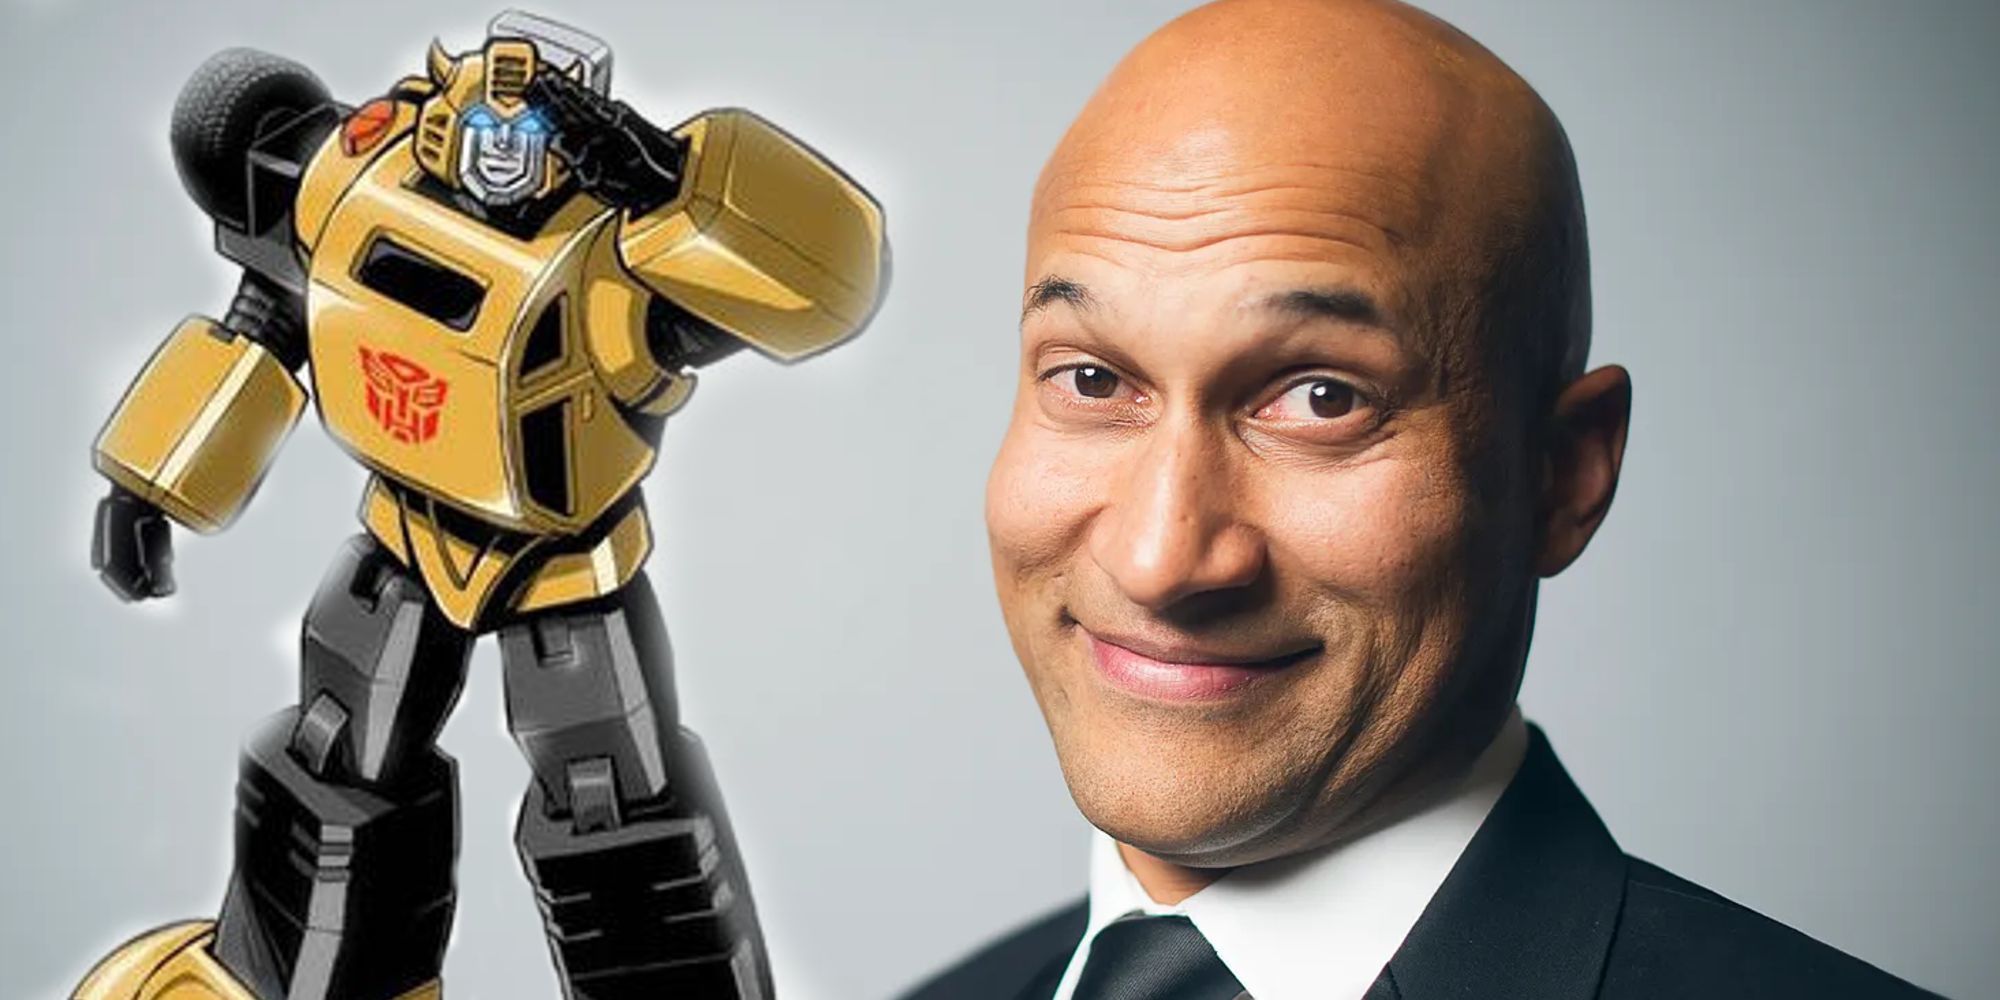 Transformers One: el nuevo actor de Bumblebee, Keegan-Michael Key, se burla de su voz